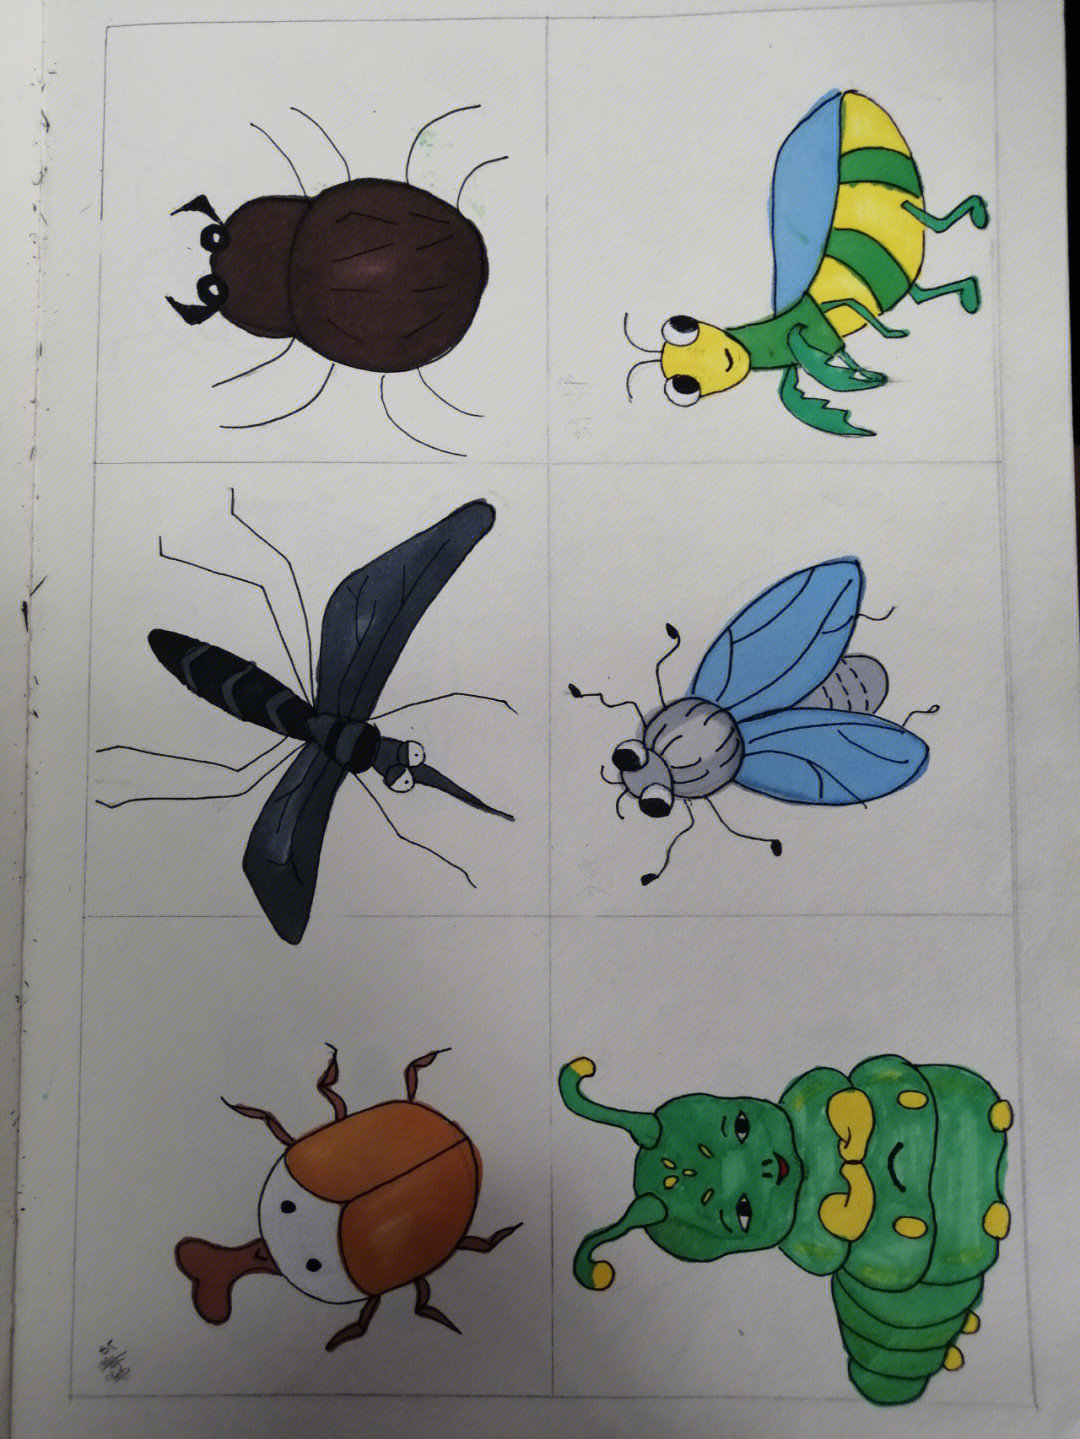 昆虫简笔画 画法图片